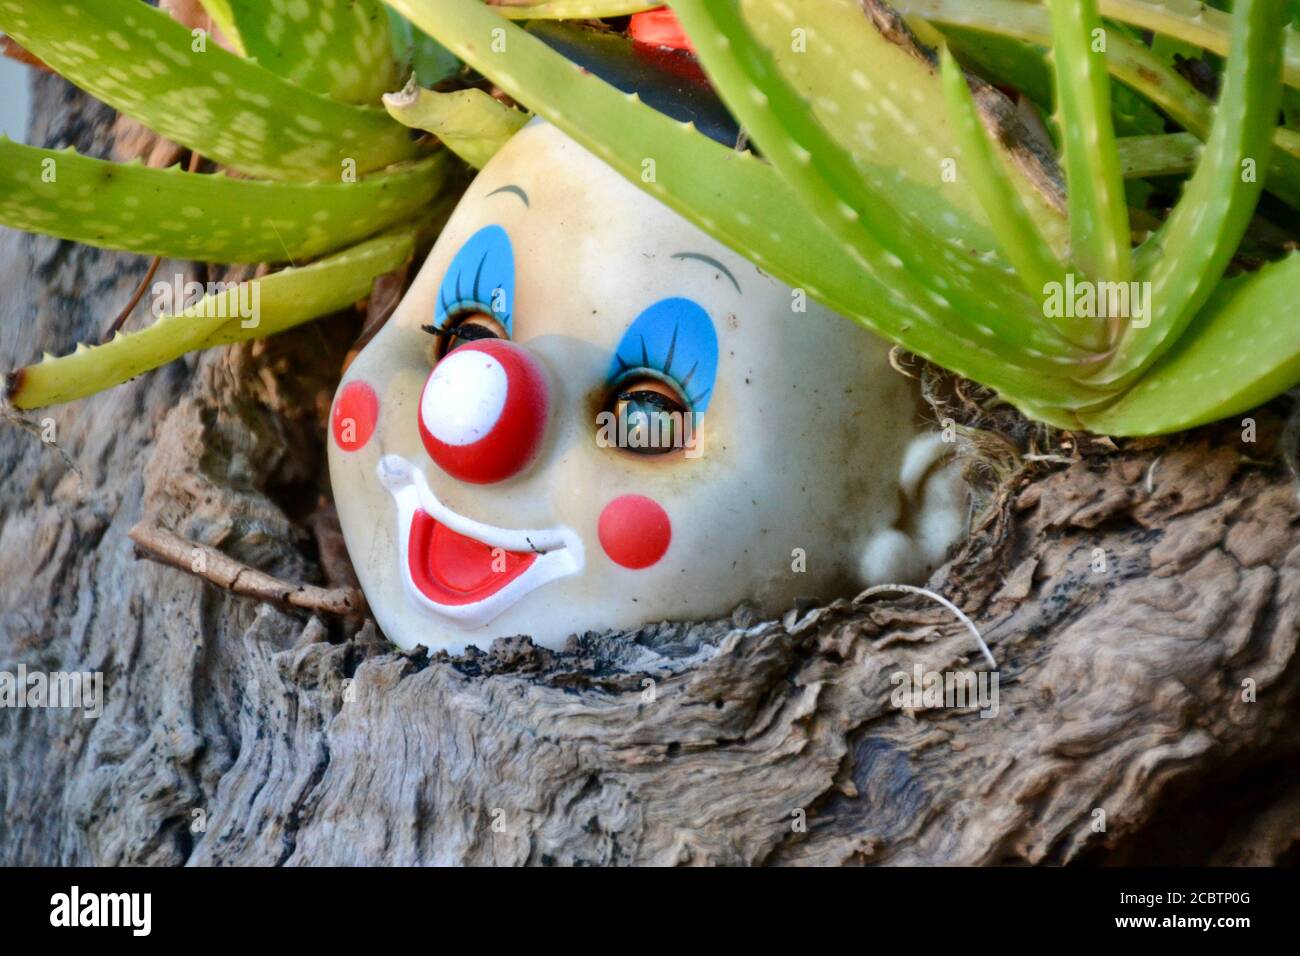 Testa di pagliaccio creepy da una bambola rotta nel giardino con occhi spalancati e un sorriso bianco sul rossetto Foto Stock